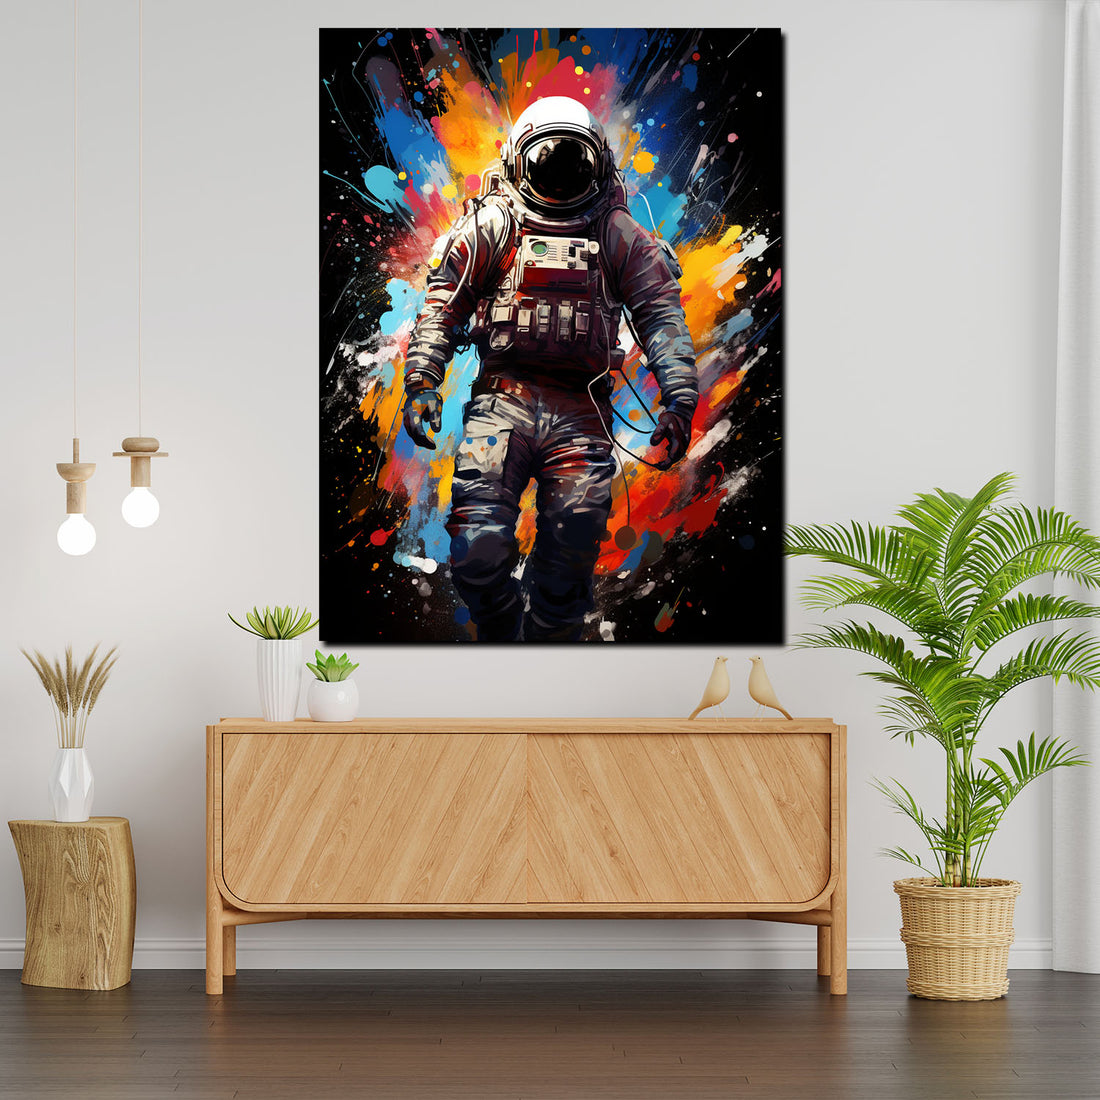 Wandbild abstrakte Kunst Astronaut, Pop Art Splash